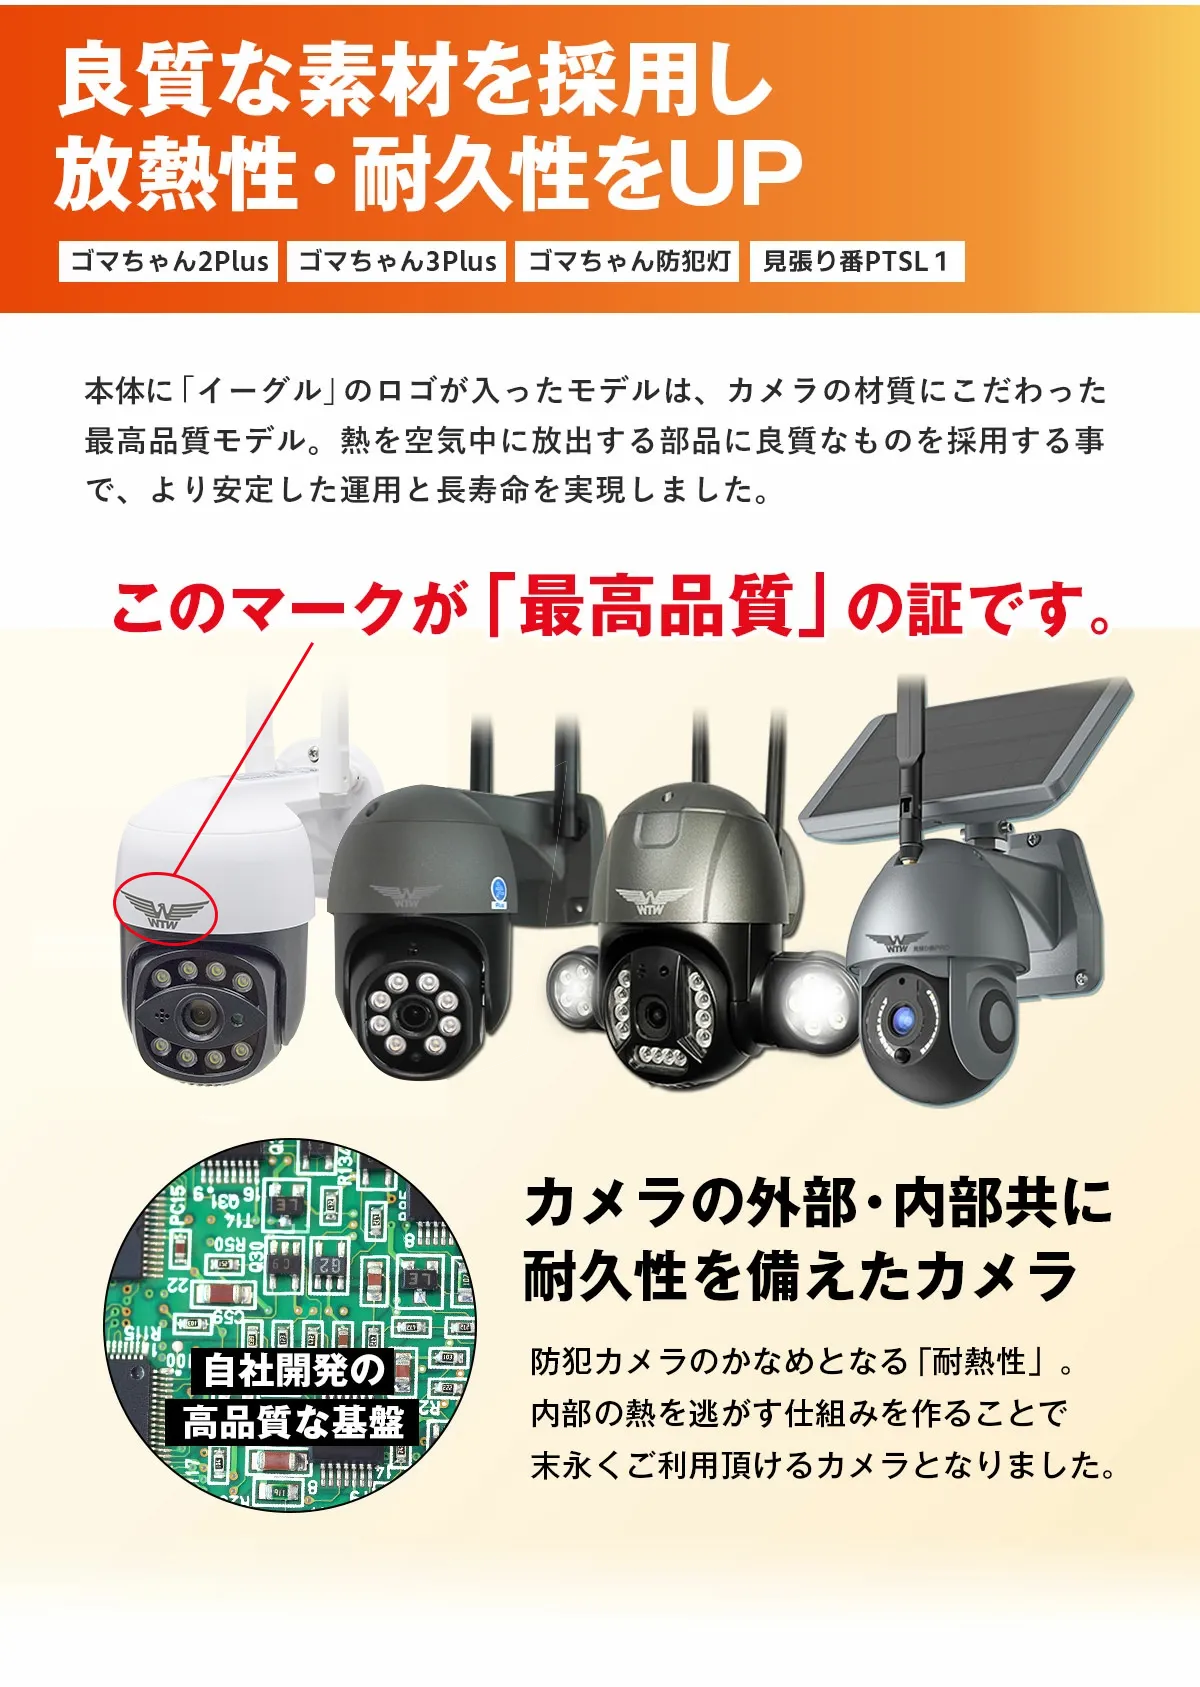 イーグル ゴマちゃん2 WTW-E2305S パンチルトカメラ